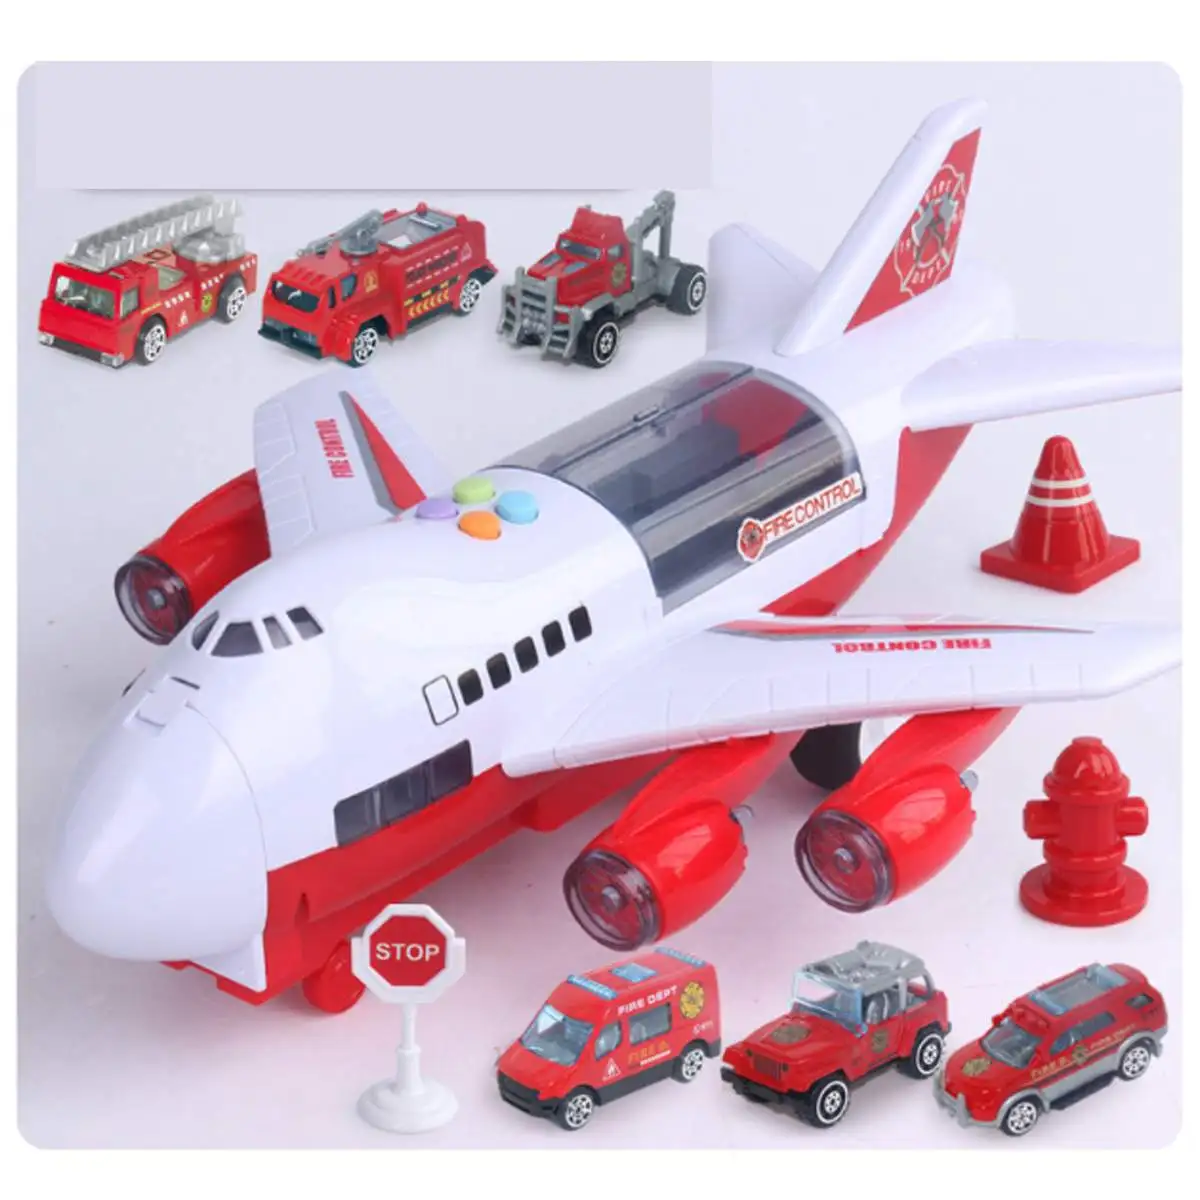 Моделирование детских игрушек трек инерции самолет музыка детские образовательные спасательные машины игрушки на тему приключений моделирование подарок для мальчика - Цвет: Red Fire Plane Set